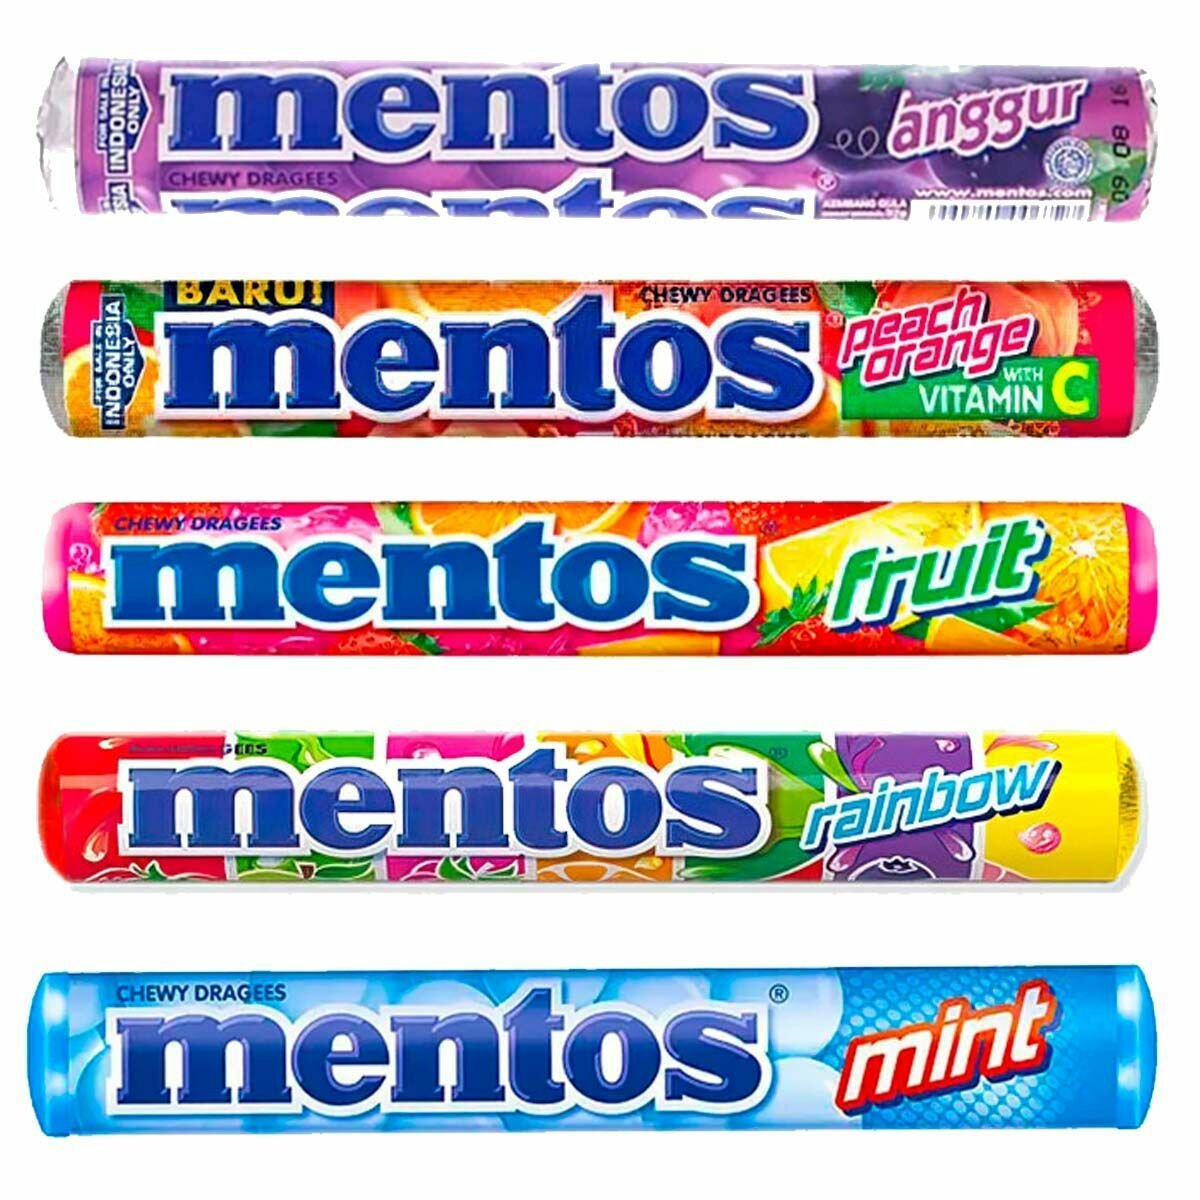 Жевательные конфеты Mentos Roll - микс набор 5 вкусов (Индонезия), 29 г (5 шт)